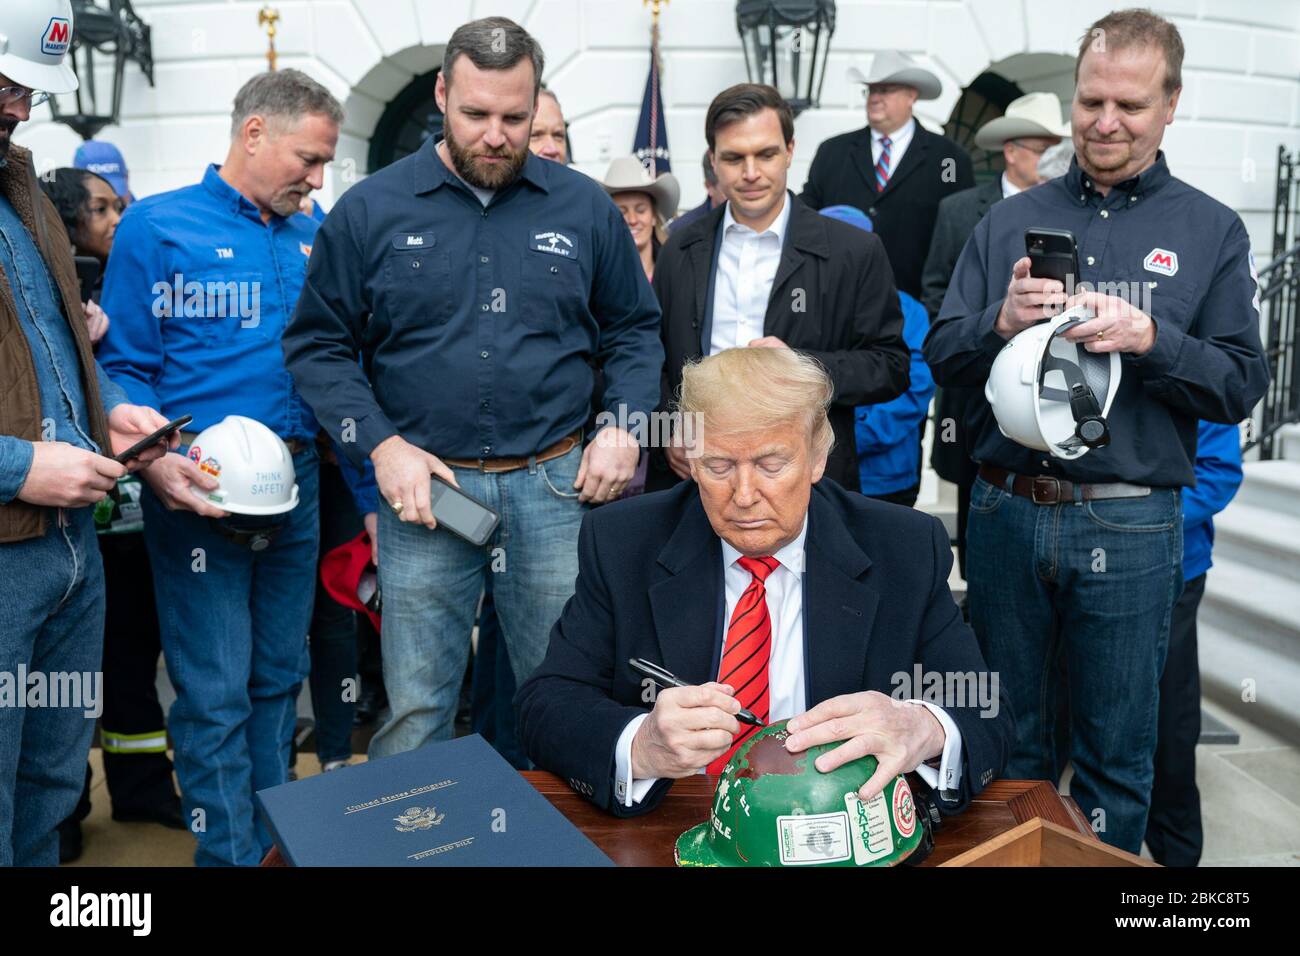 Le président Donald J. Trump accueille les invités à la suite de la cérémonie de signature de l'Accord commercial États-Unis-Mexique-Canada le mercredi 29 janvier 2020, devant le South Portico de la Maison Blanche. Le président Trump à la cérémonie de signature de l'USMCA Banque D'Images